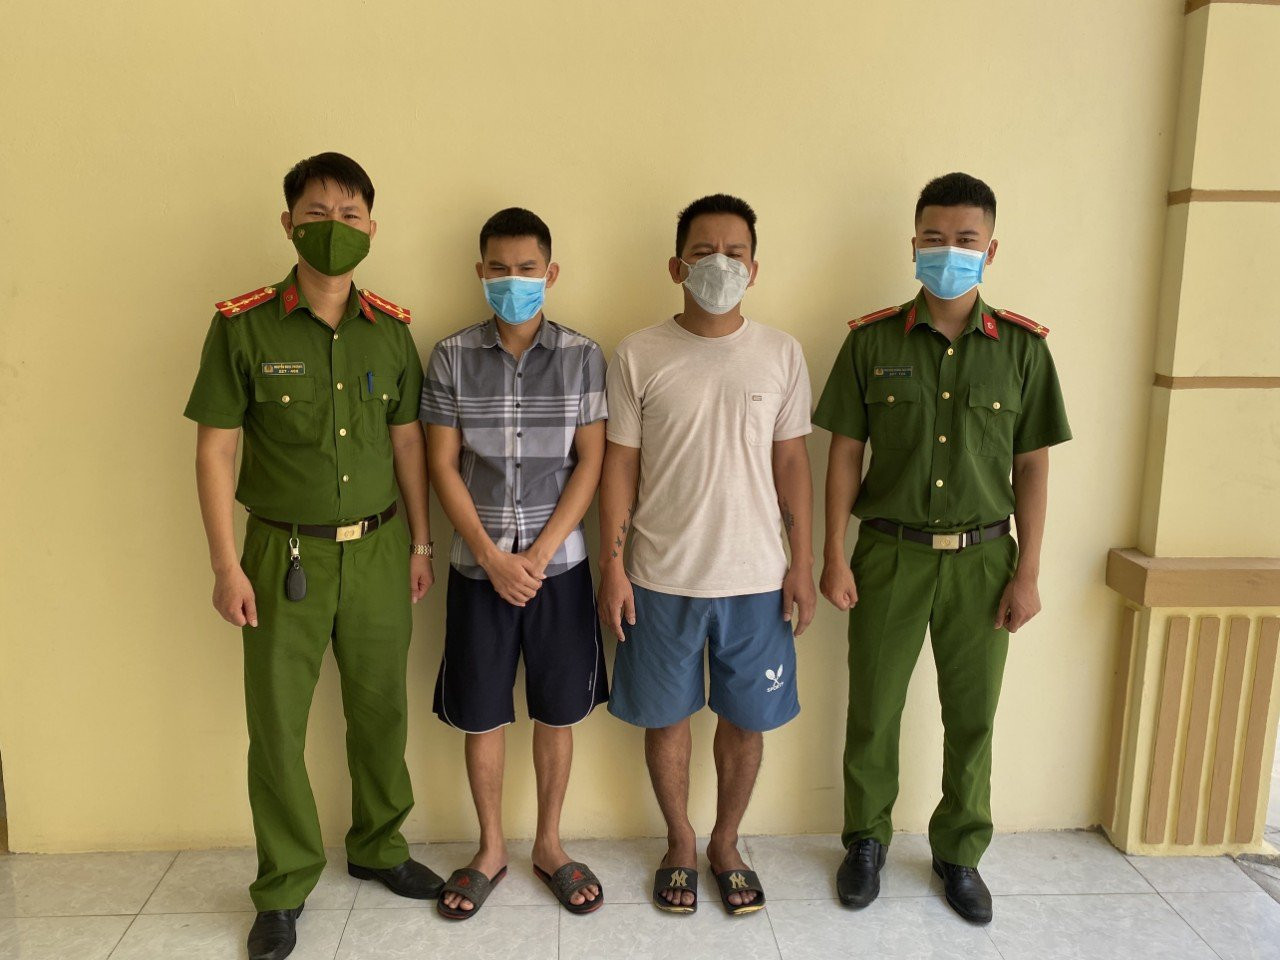 02 đối tượng Trần Văn Nam và Mai Ngọc Minh (giữa) hiện đang bị tạm giữ về hành vi lừa đảo chiếm đoạt tài sản. Ảnh: Hồng Ngọc